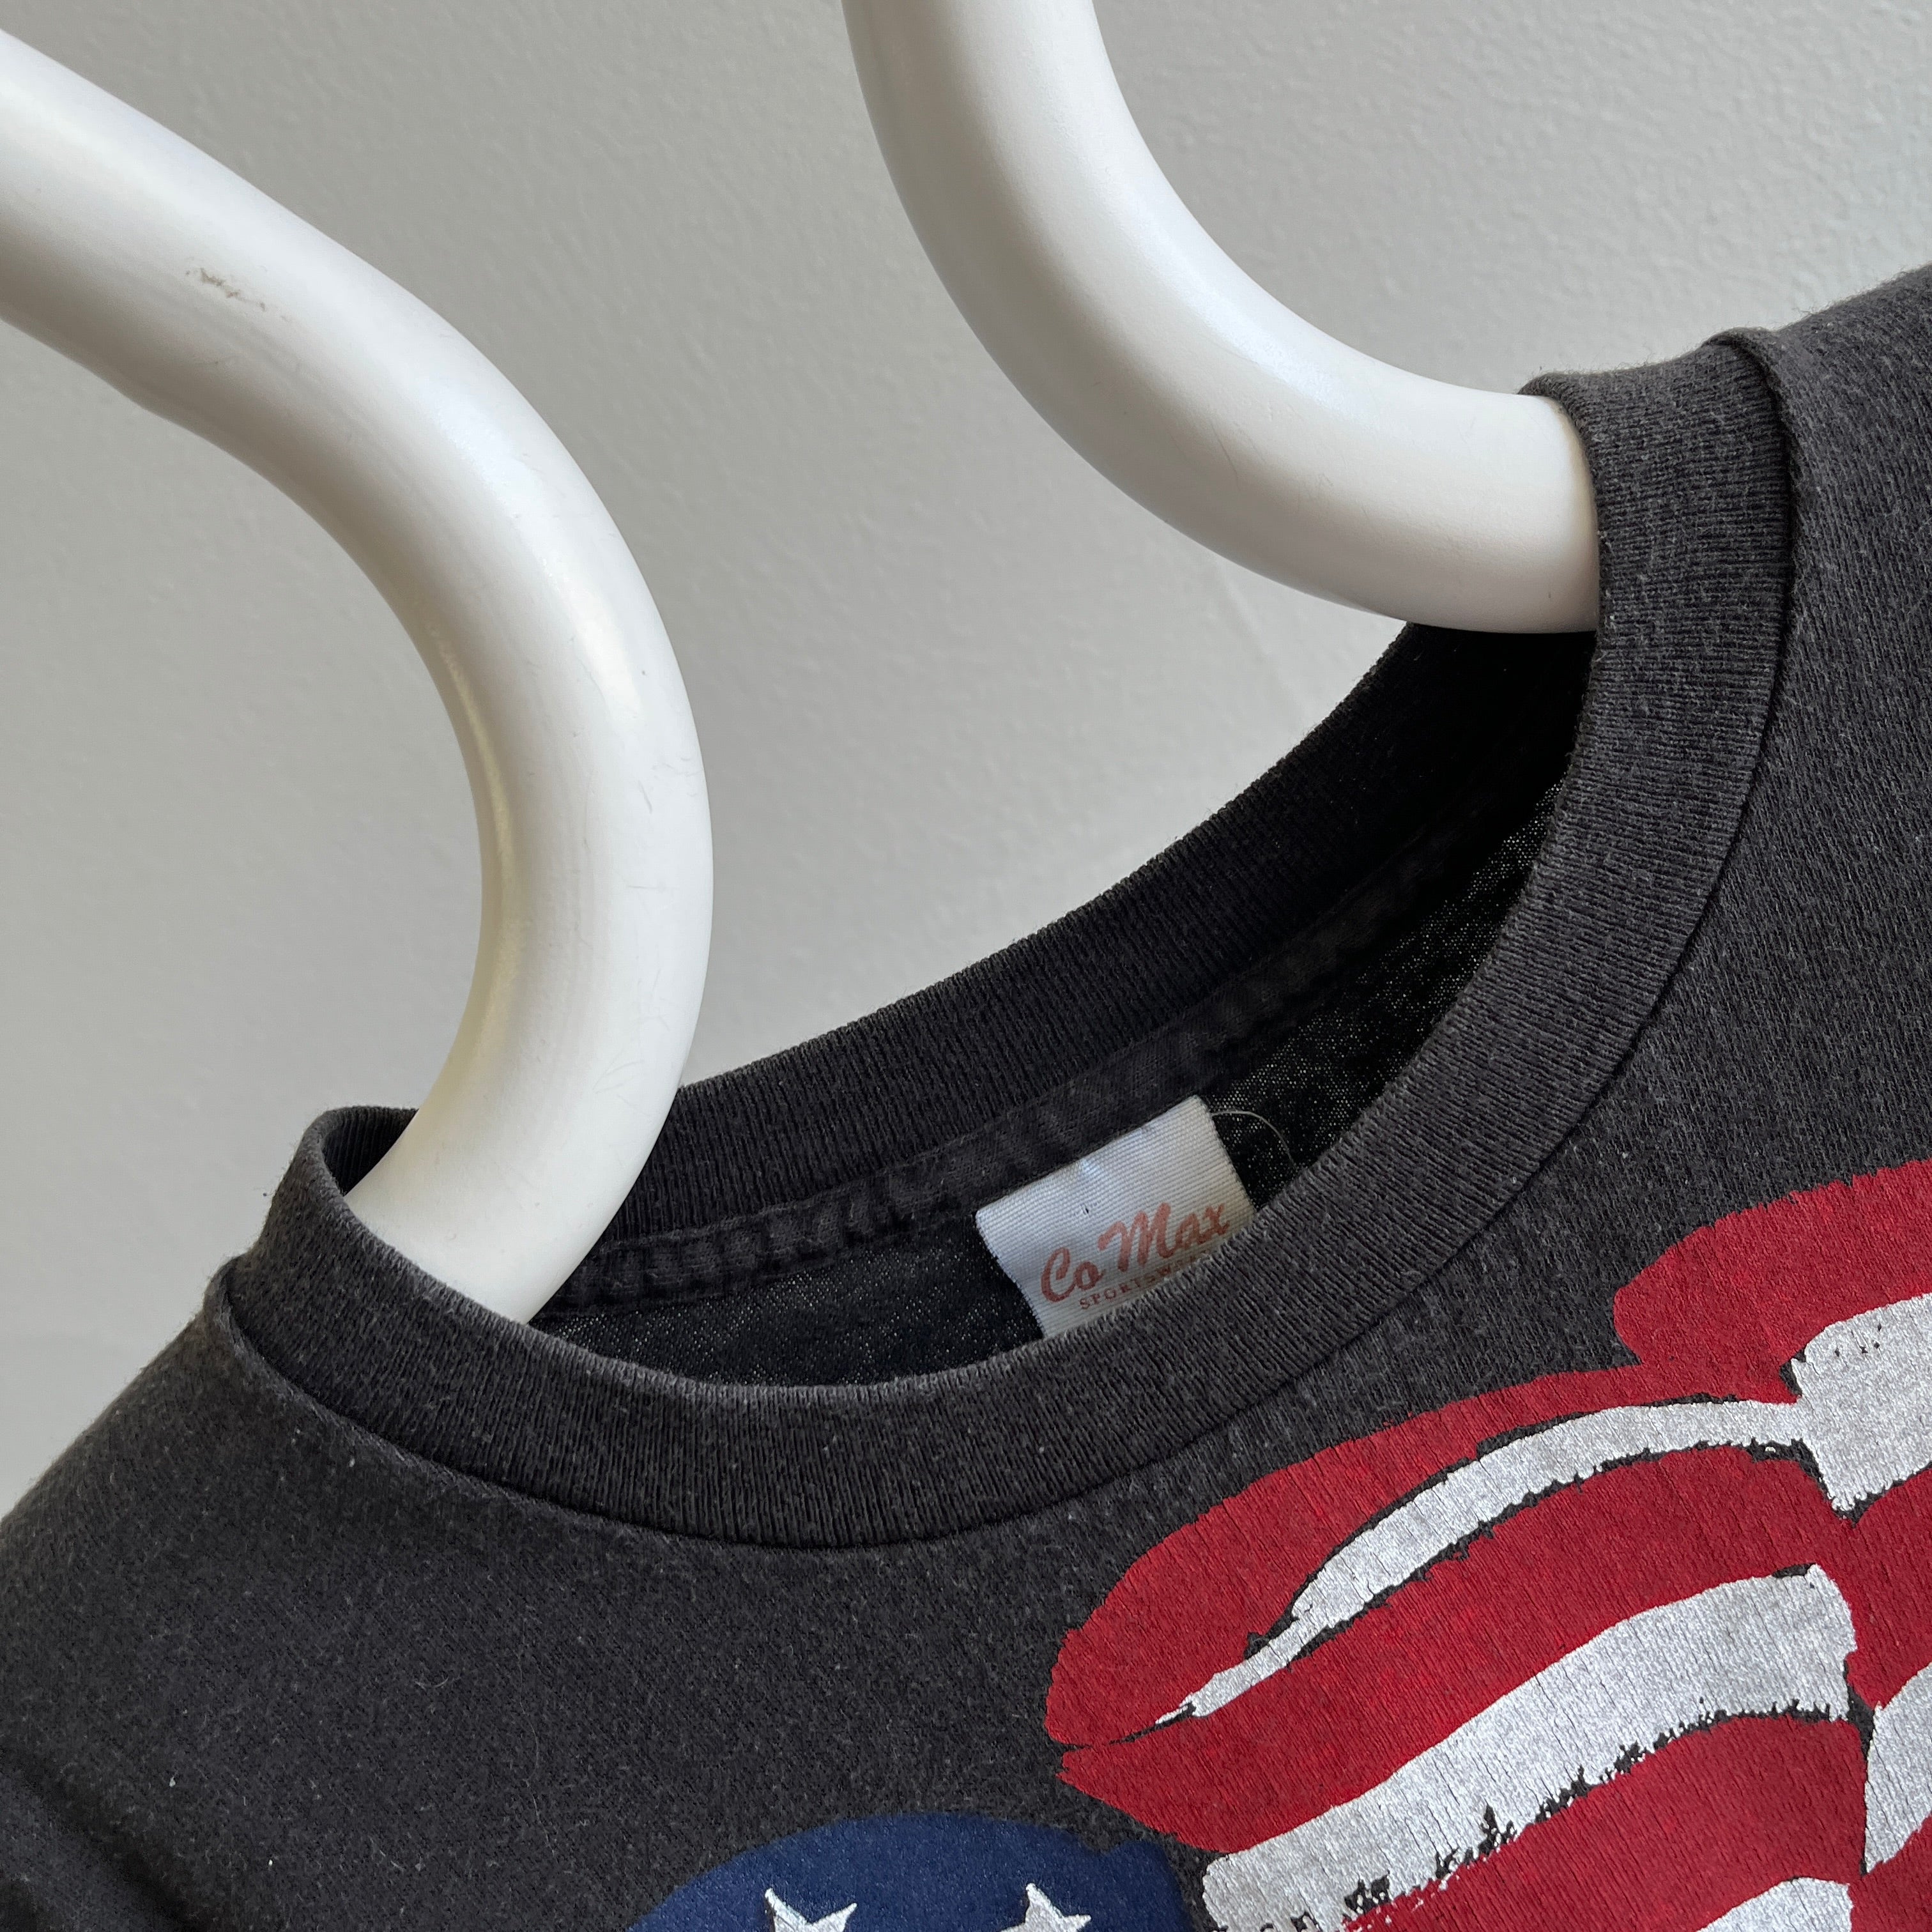 T-shirt en coton avec drapeau américain des années 1990